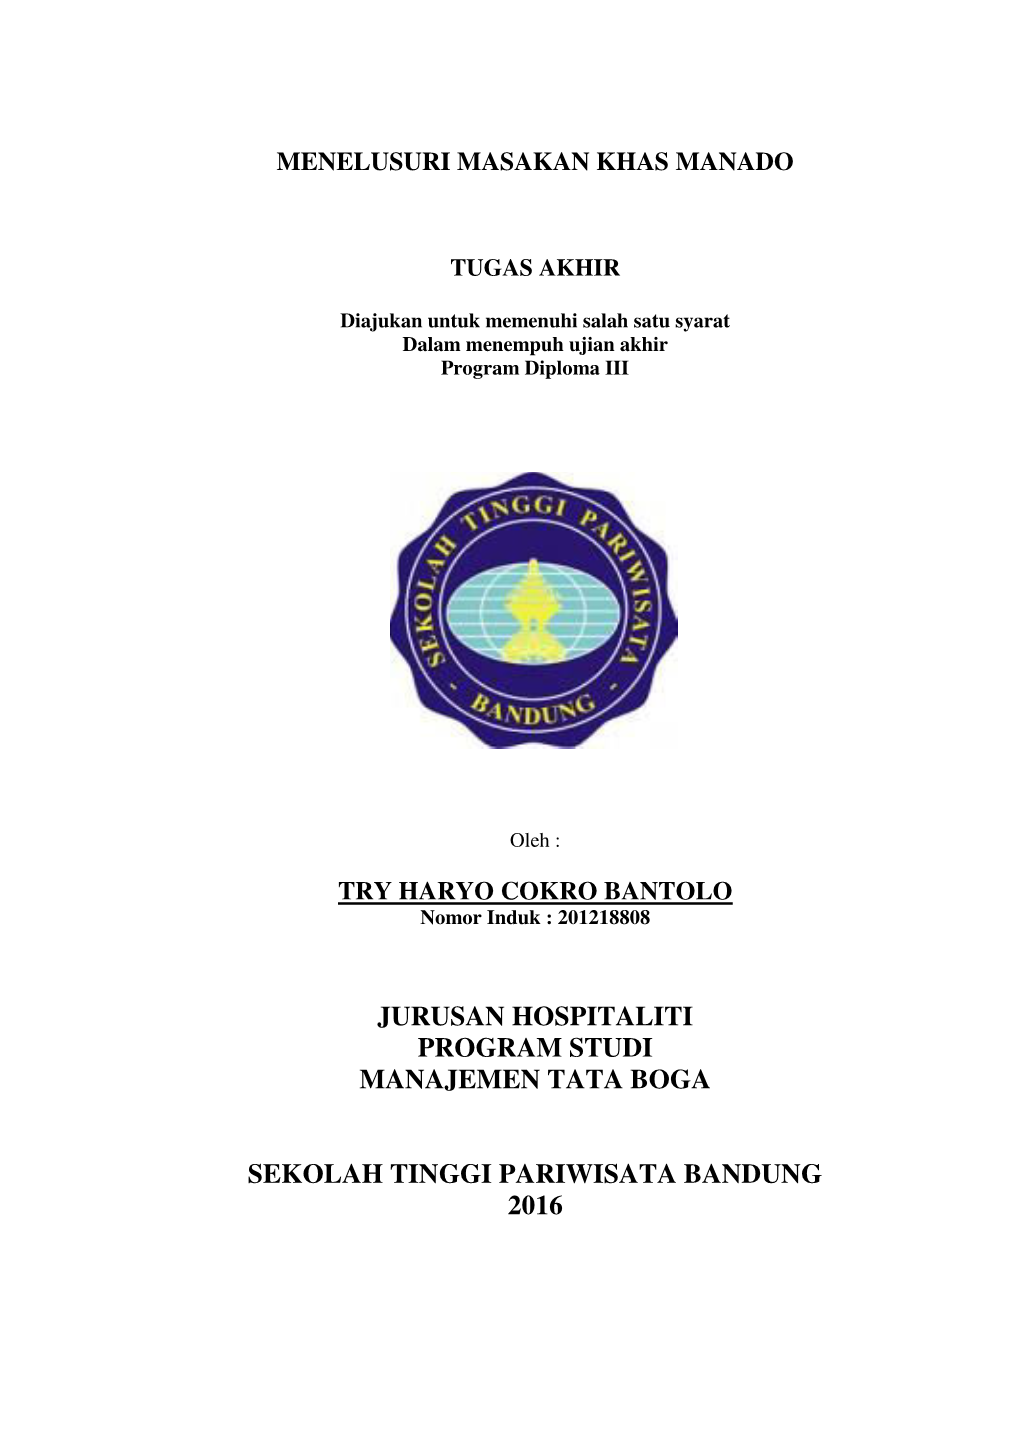 Jurusan Hospitaliti Program Studi Manajemen Tata Boga Sekolah Tinggi Pariwisata Bandung 2016